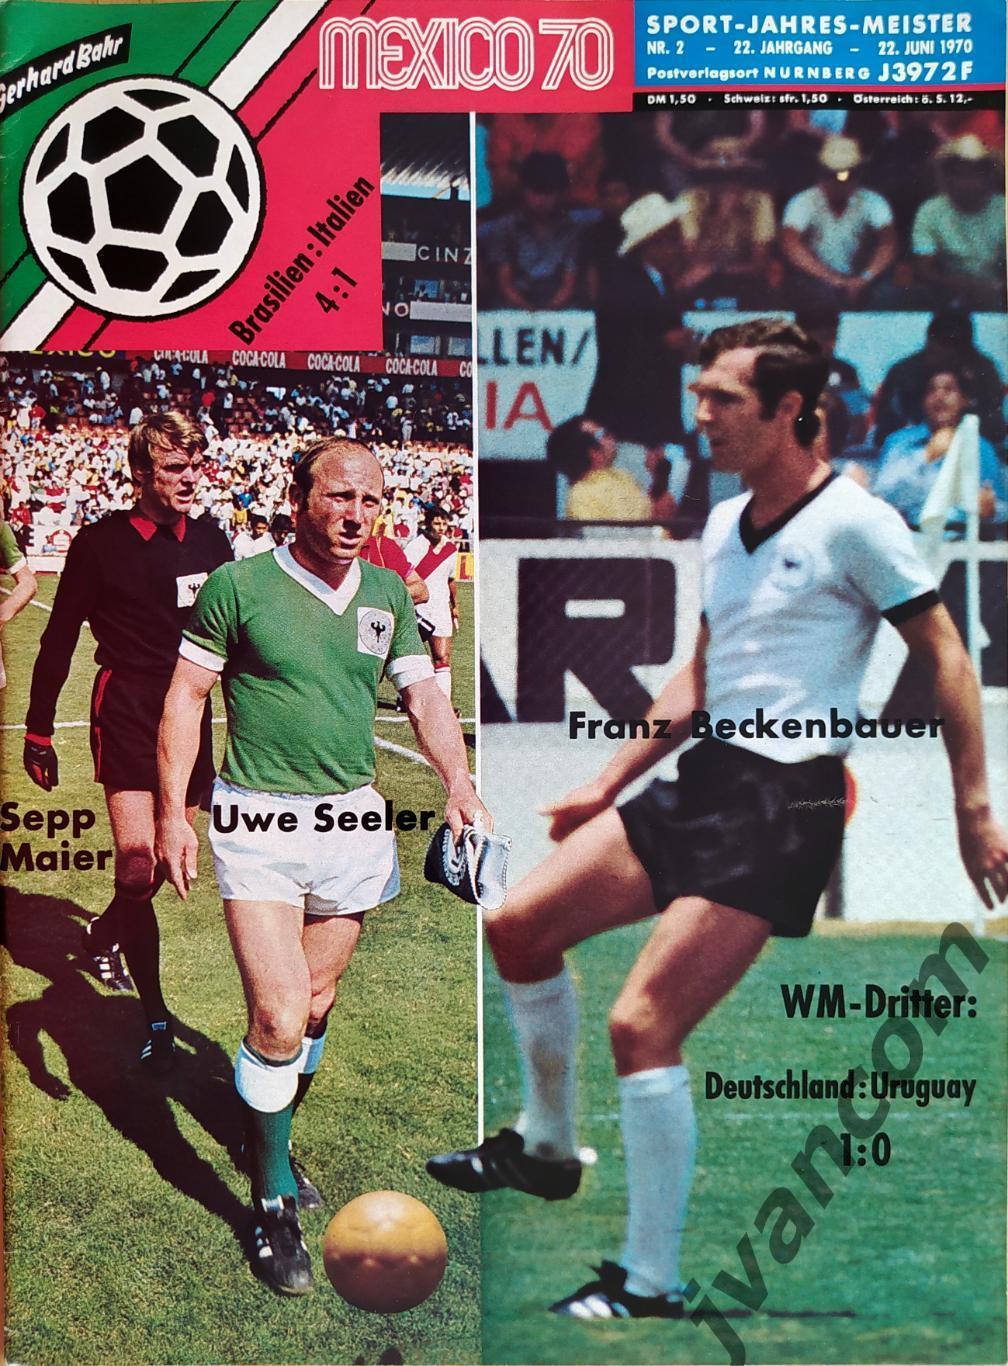 FUSSBALL-1970 Weltmeisterschaft / Чемпионат Мира по футболу в Мексике 1970 года.